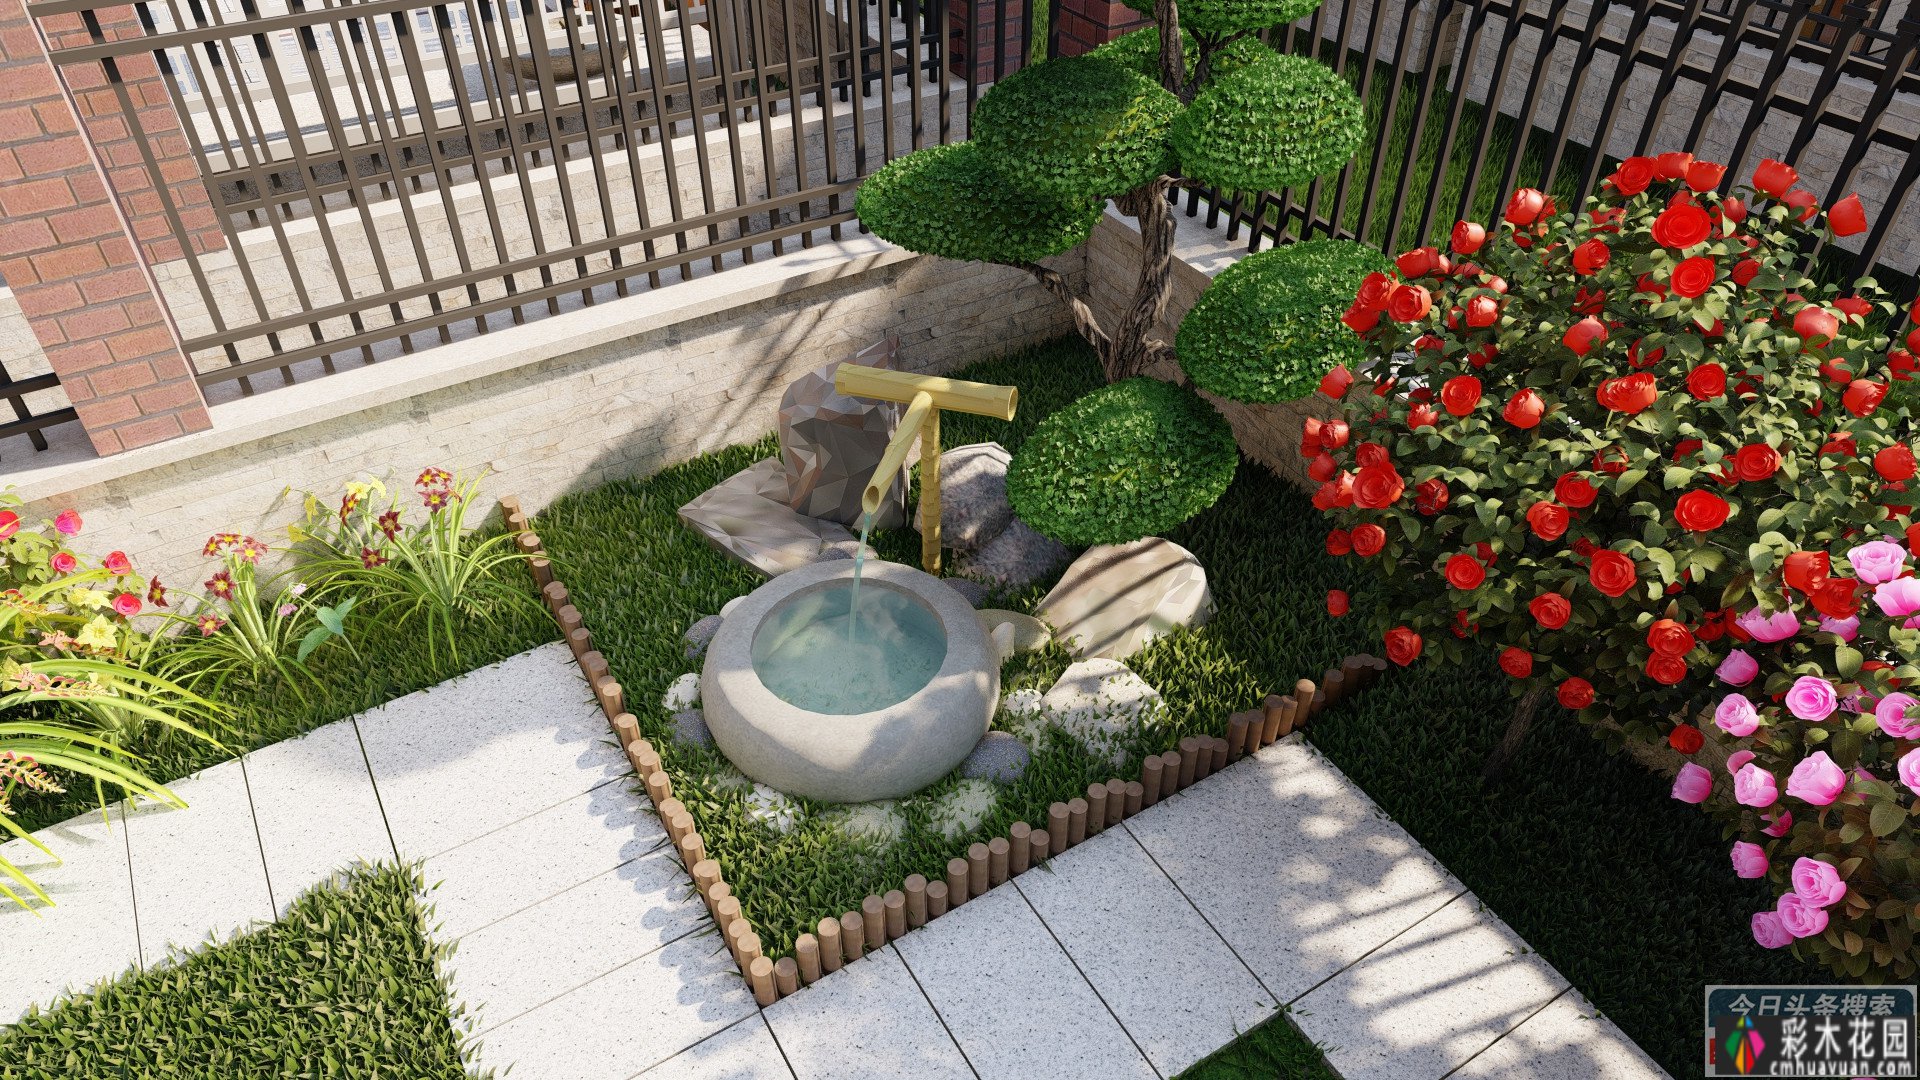 86㎡ 庭院 设计,最流行的现代风格!效果图 视频动画,漂亮